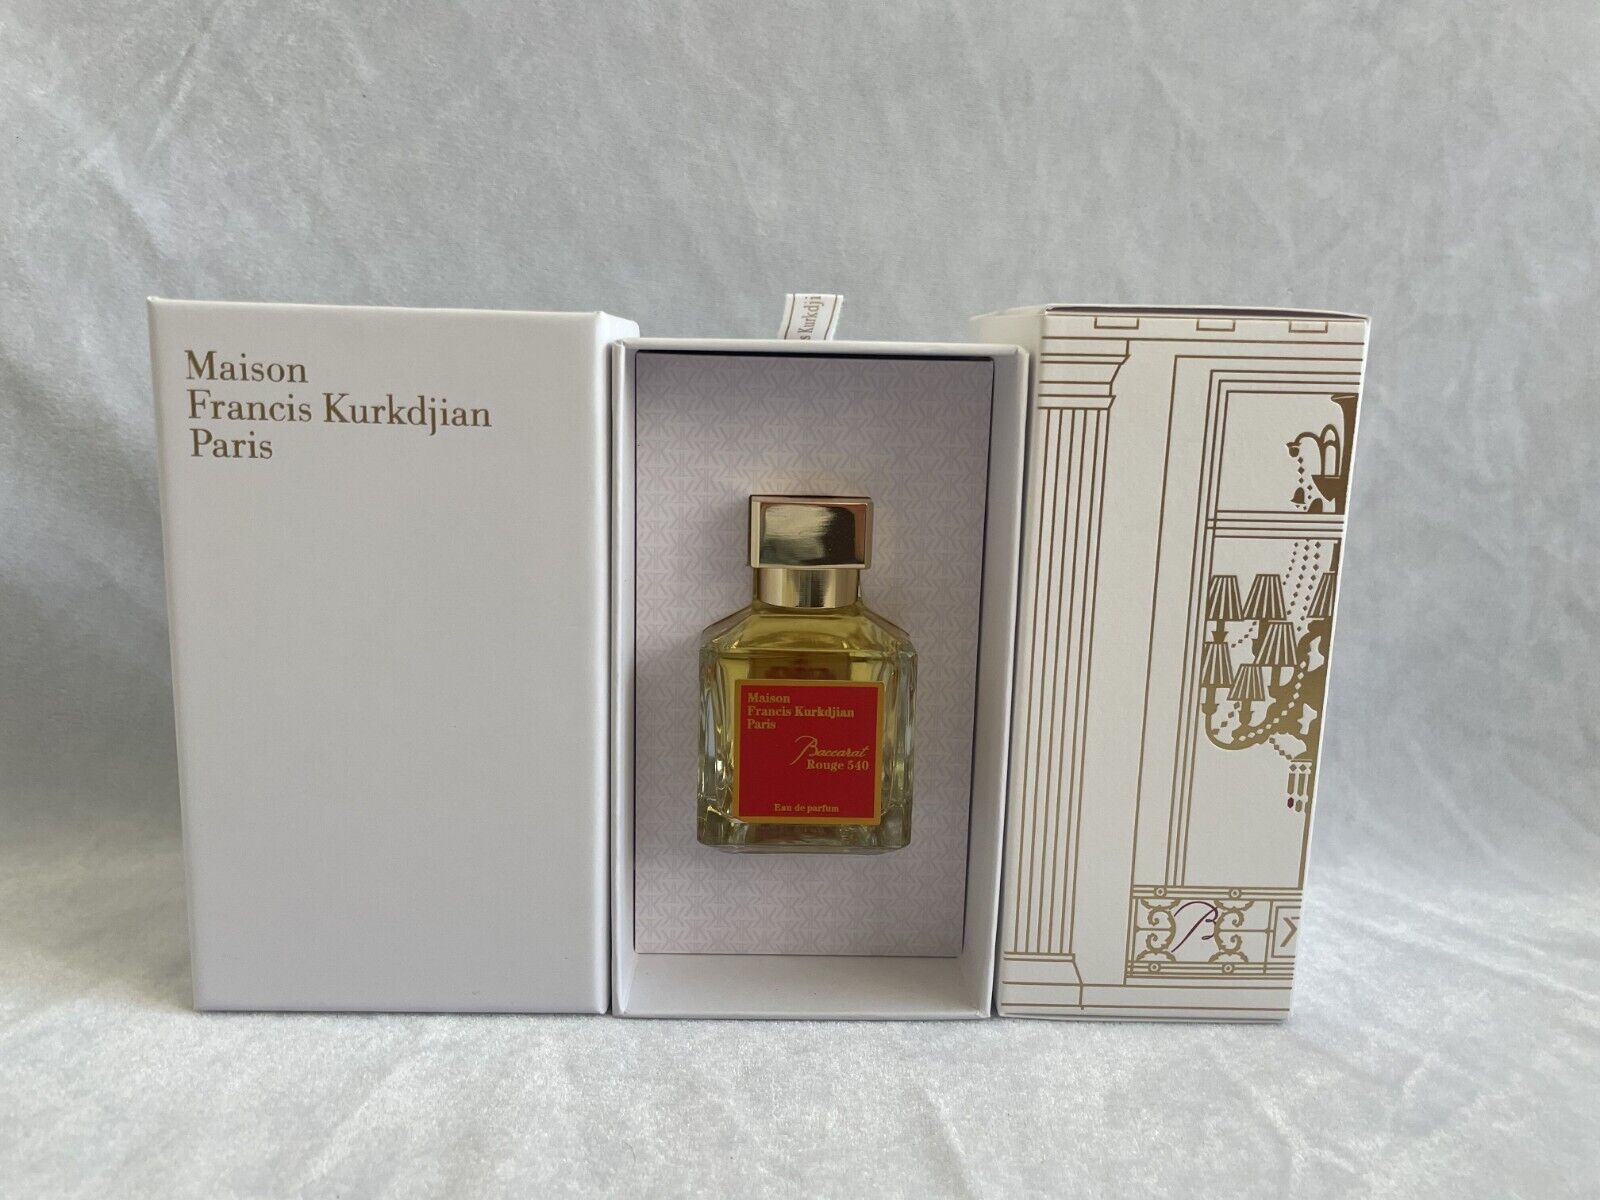 Maison Francis Kurkdjian Baccarat Rouge 540 Extrait de Parfum 2.4 oz Sealed